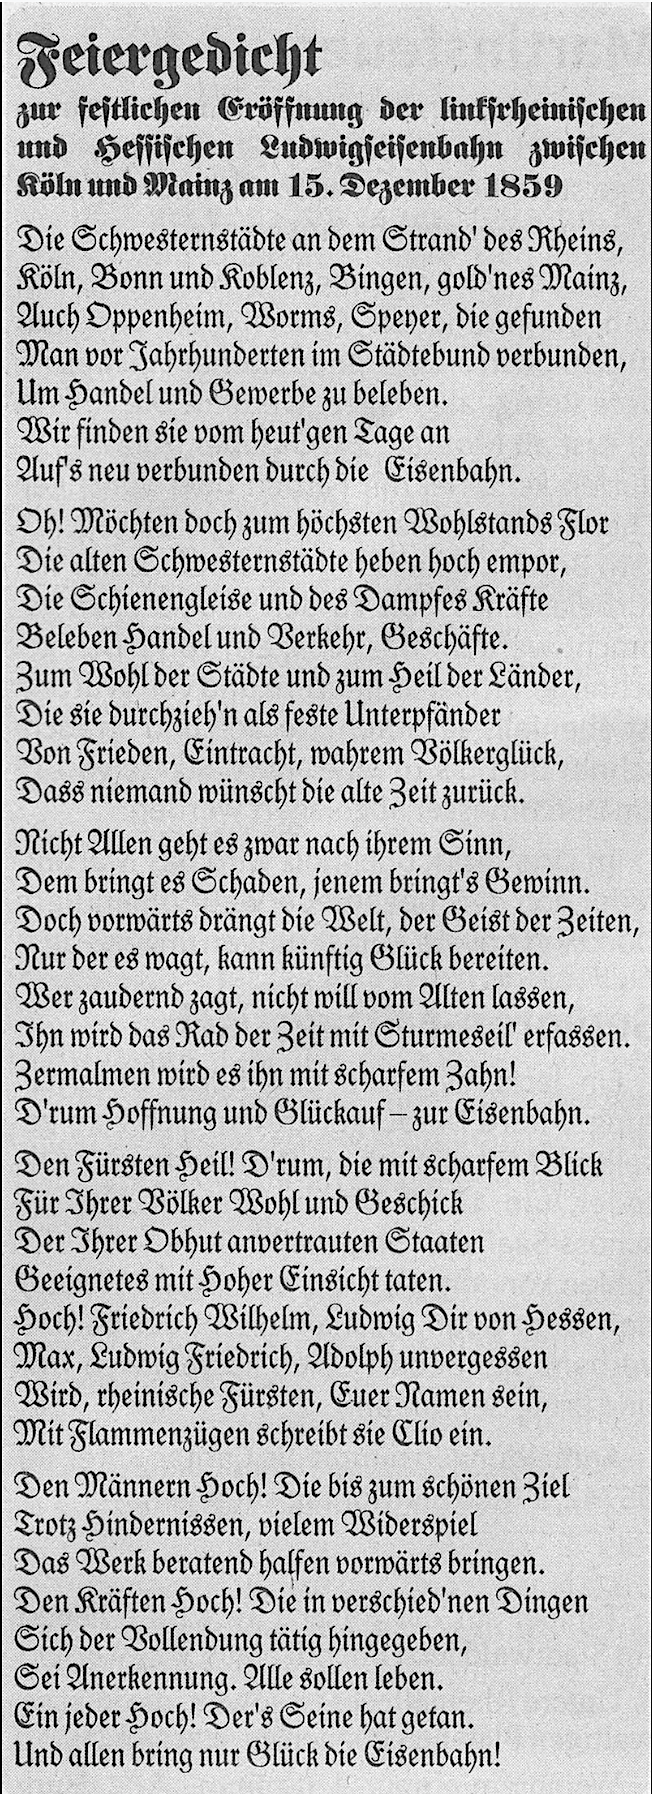 Feiergedicht vom 15. 12.1859 zur Eröffnung der Bahnlinie zwischen Köln und Mainz. Gemeinfrei.